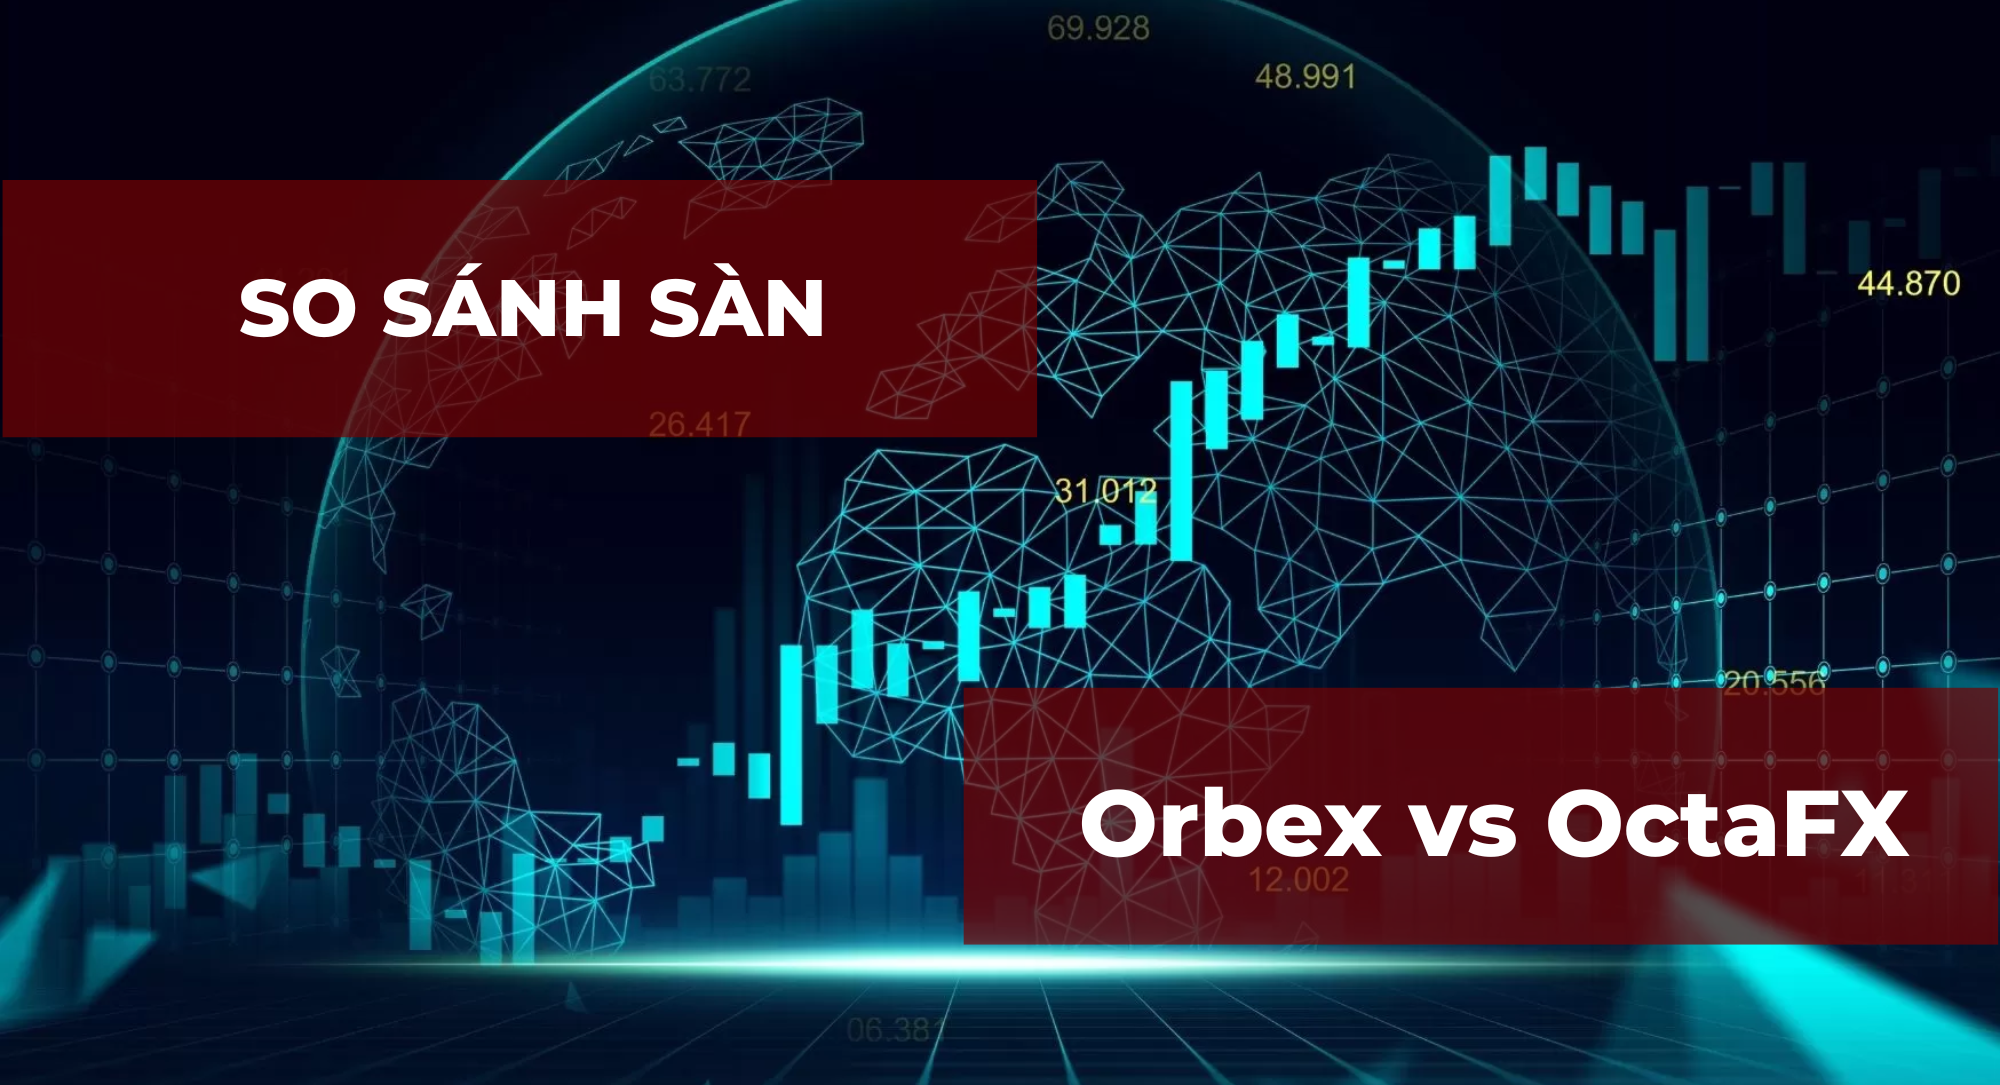 So sánh sàn Orbex và OctaFX chi tiết, chính xác